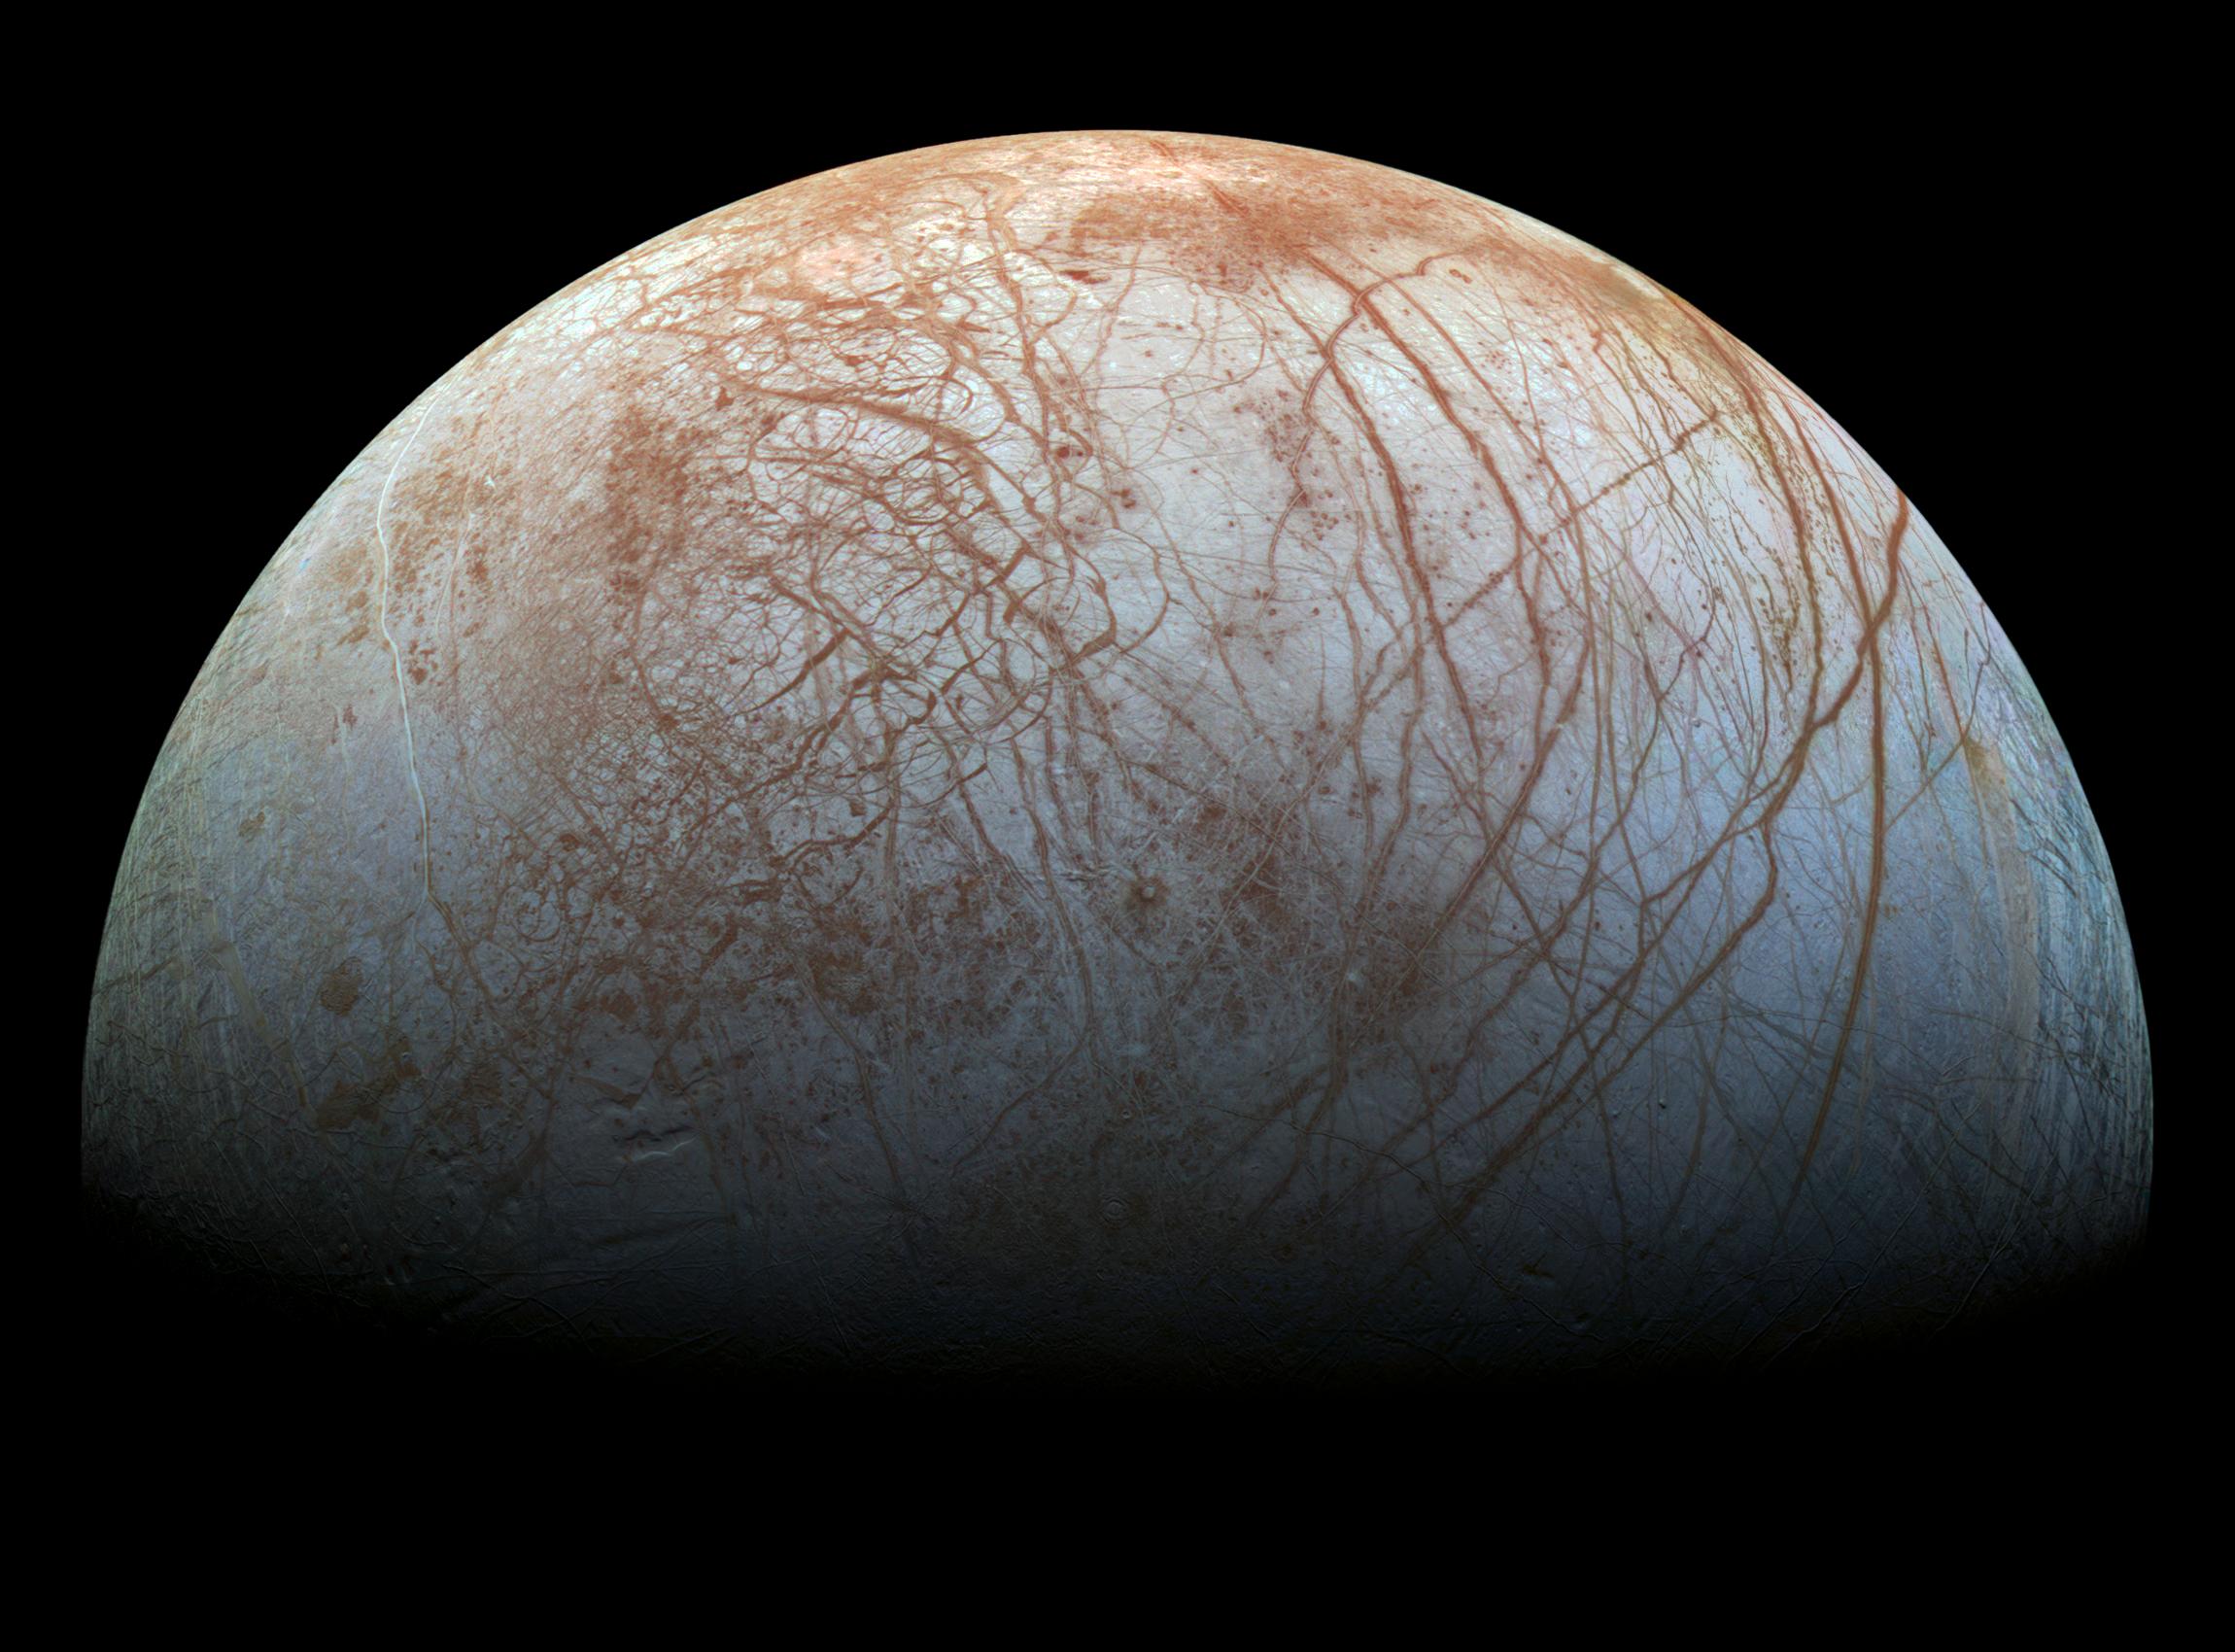 Europa. Credit: NASA